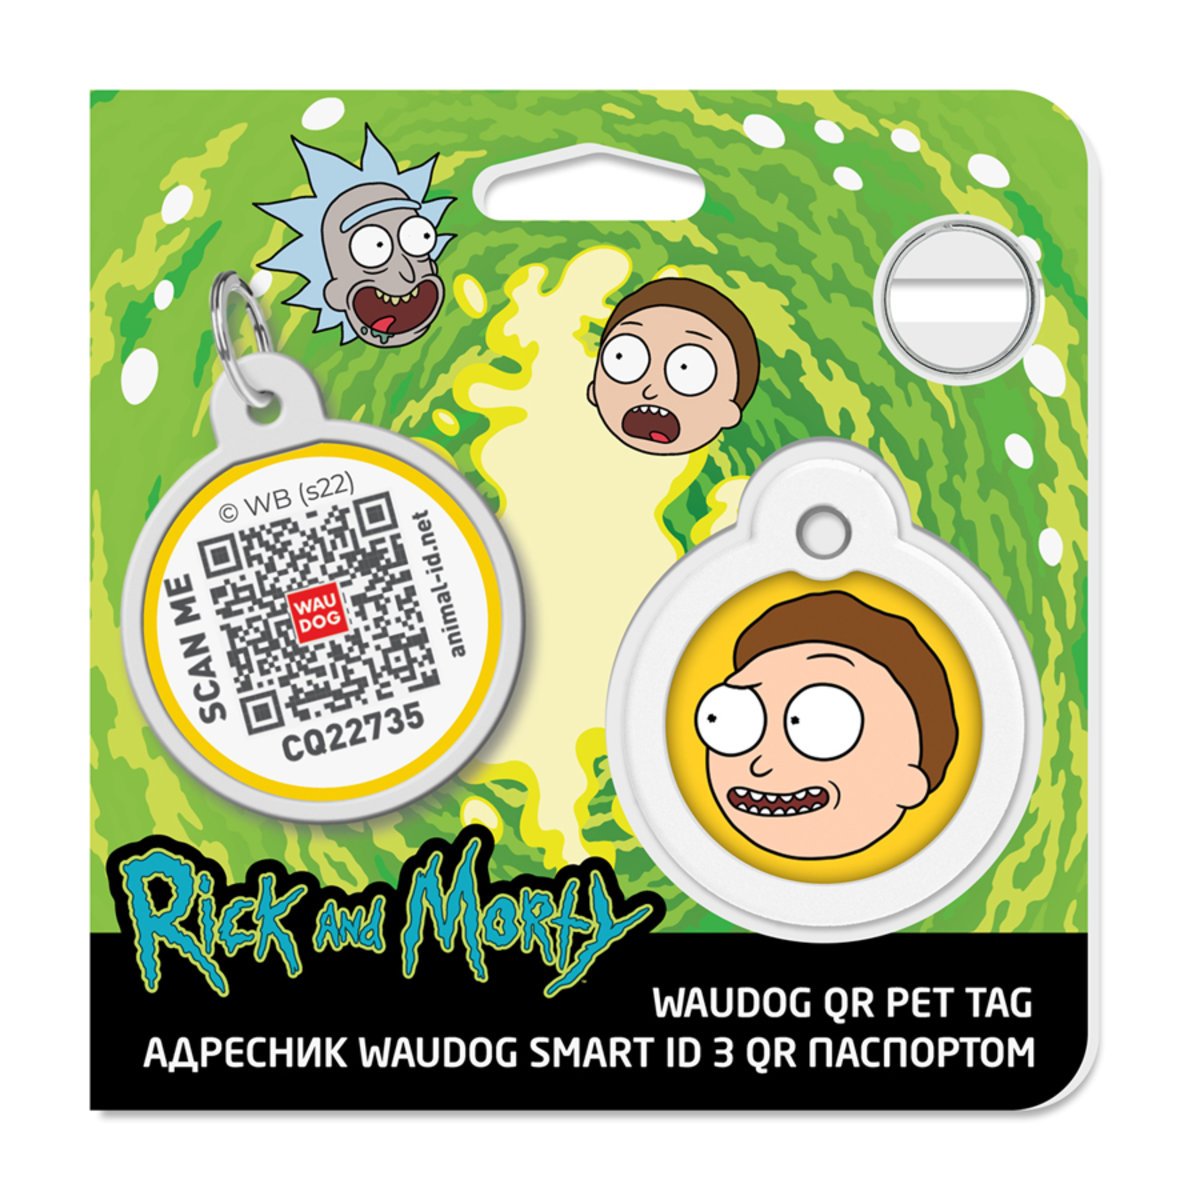 Адресник для собак і котів Waudog Smart ID з QR паспортом, Рік та Морті 2, M, діаметр 30 мм - фото 4